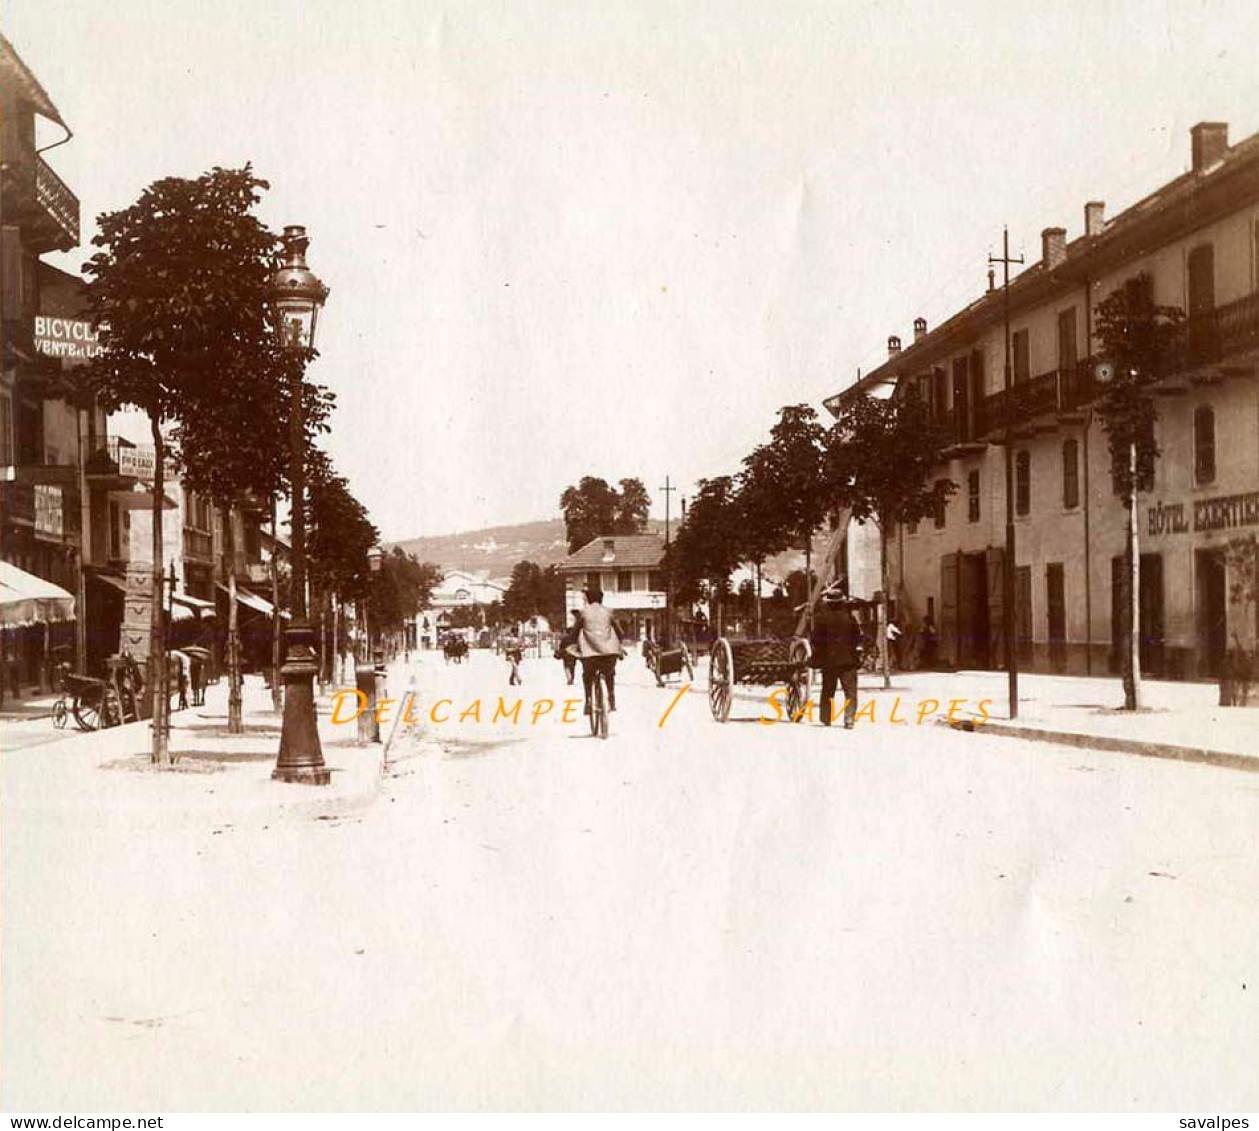 Savoie 1897 * Aix-les-Bains, Thermes, Arc Campanus, Rue De Genève Hôtel Exertier * 4 Photos Originales - Places